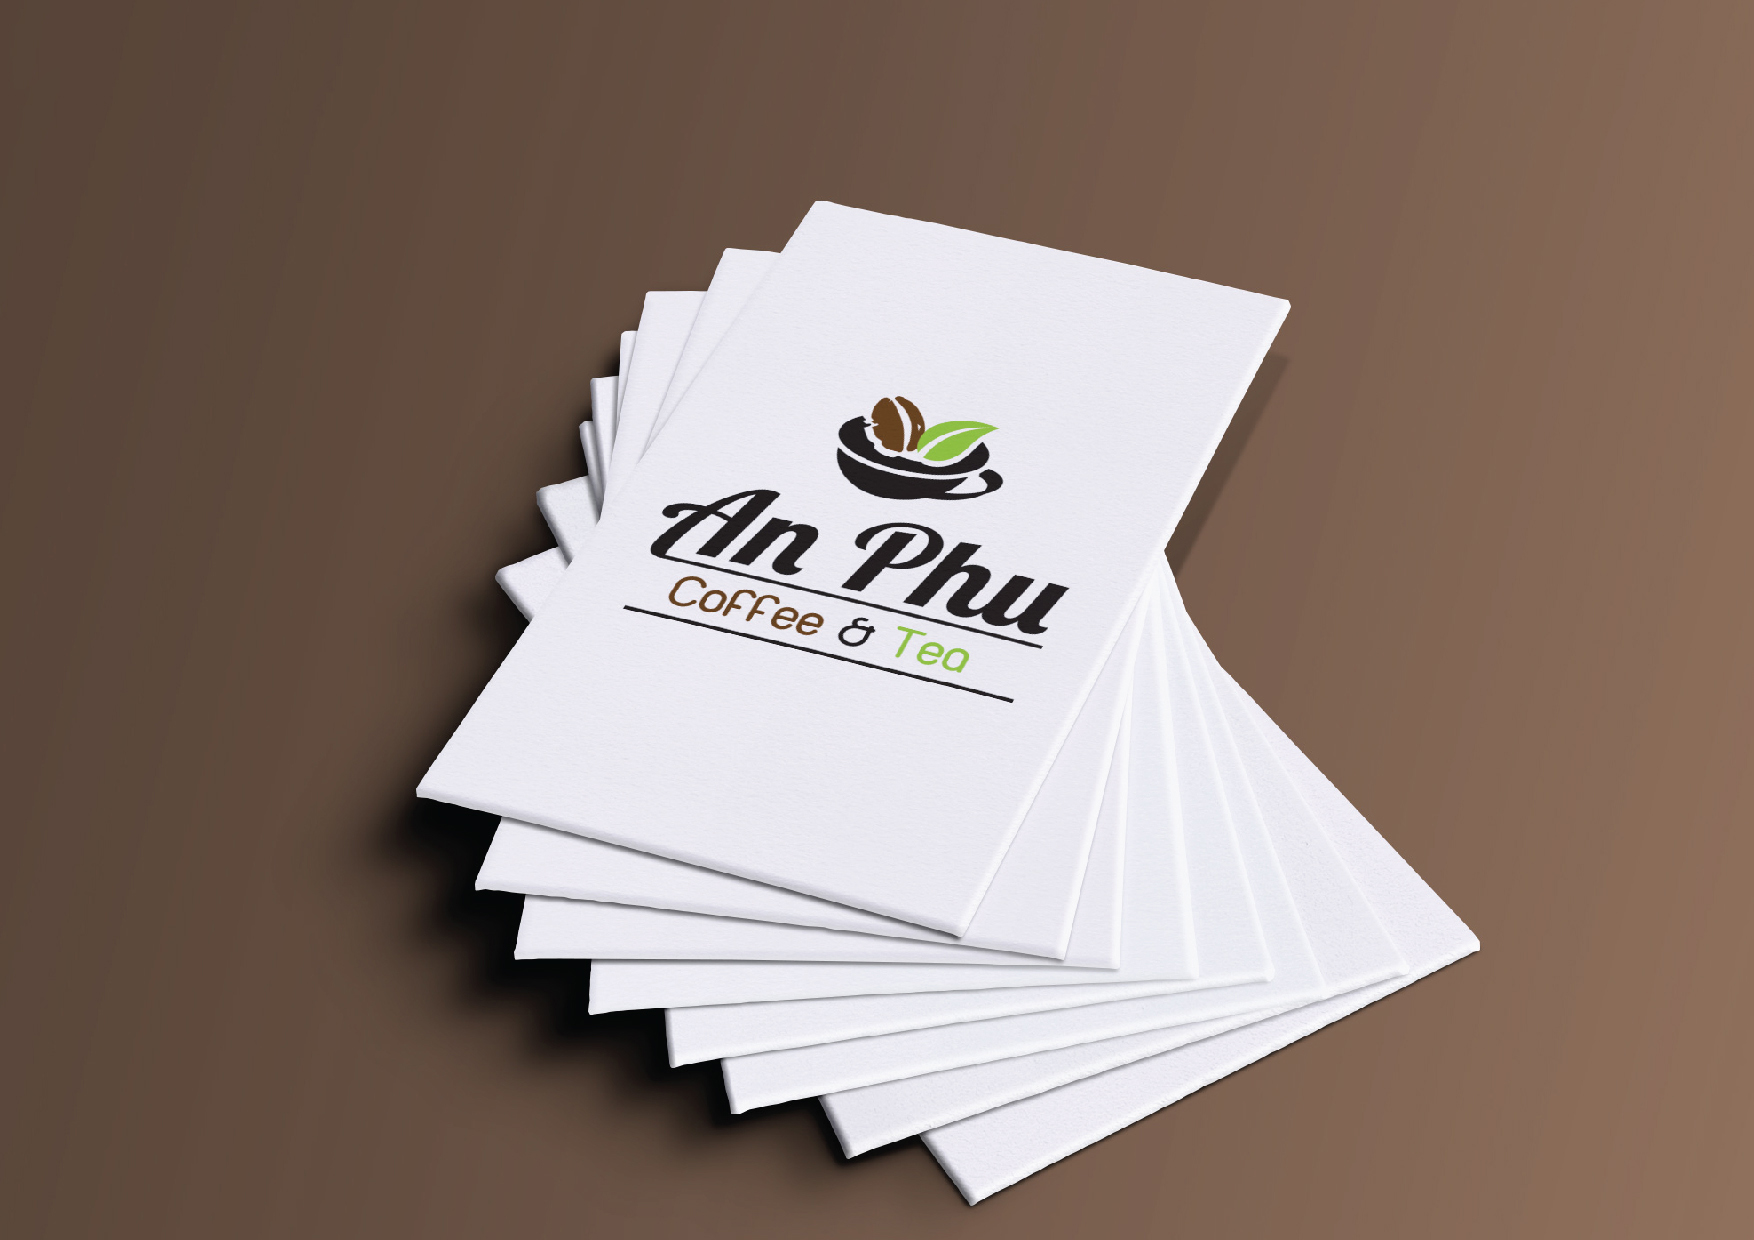 Dự án thiết kế logo và bao bì sản phẩm cà phê AN PHÚ tại Hà Nội